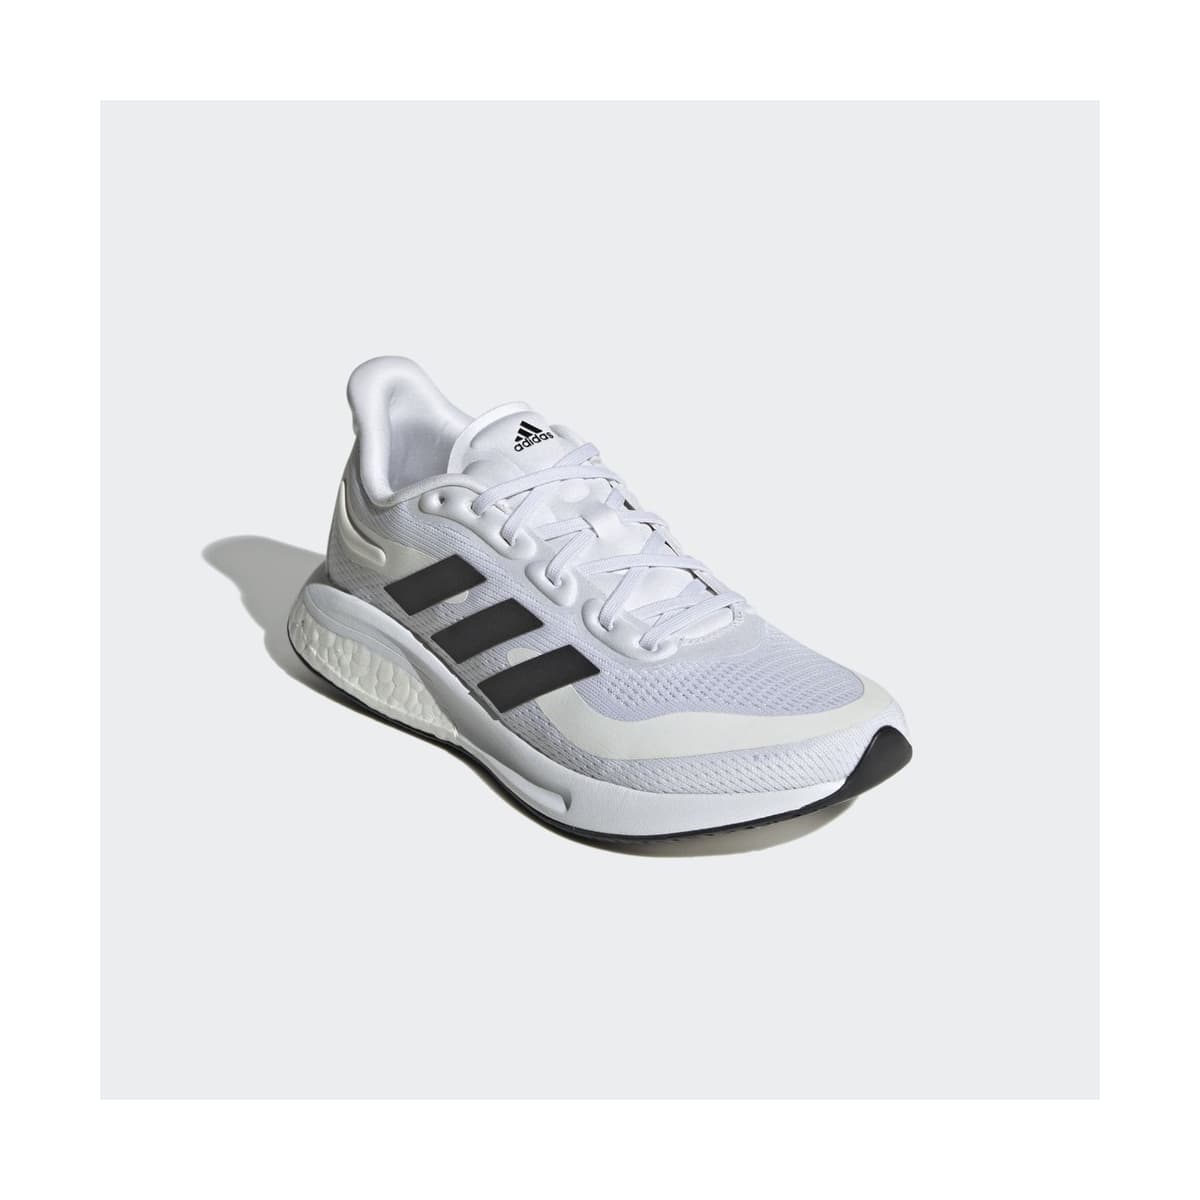 adidas Supernova Beyaz Koşu Ayakkabısı (GZ4027)